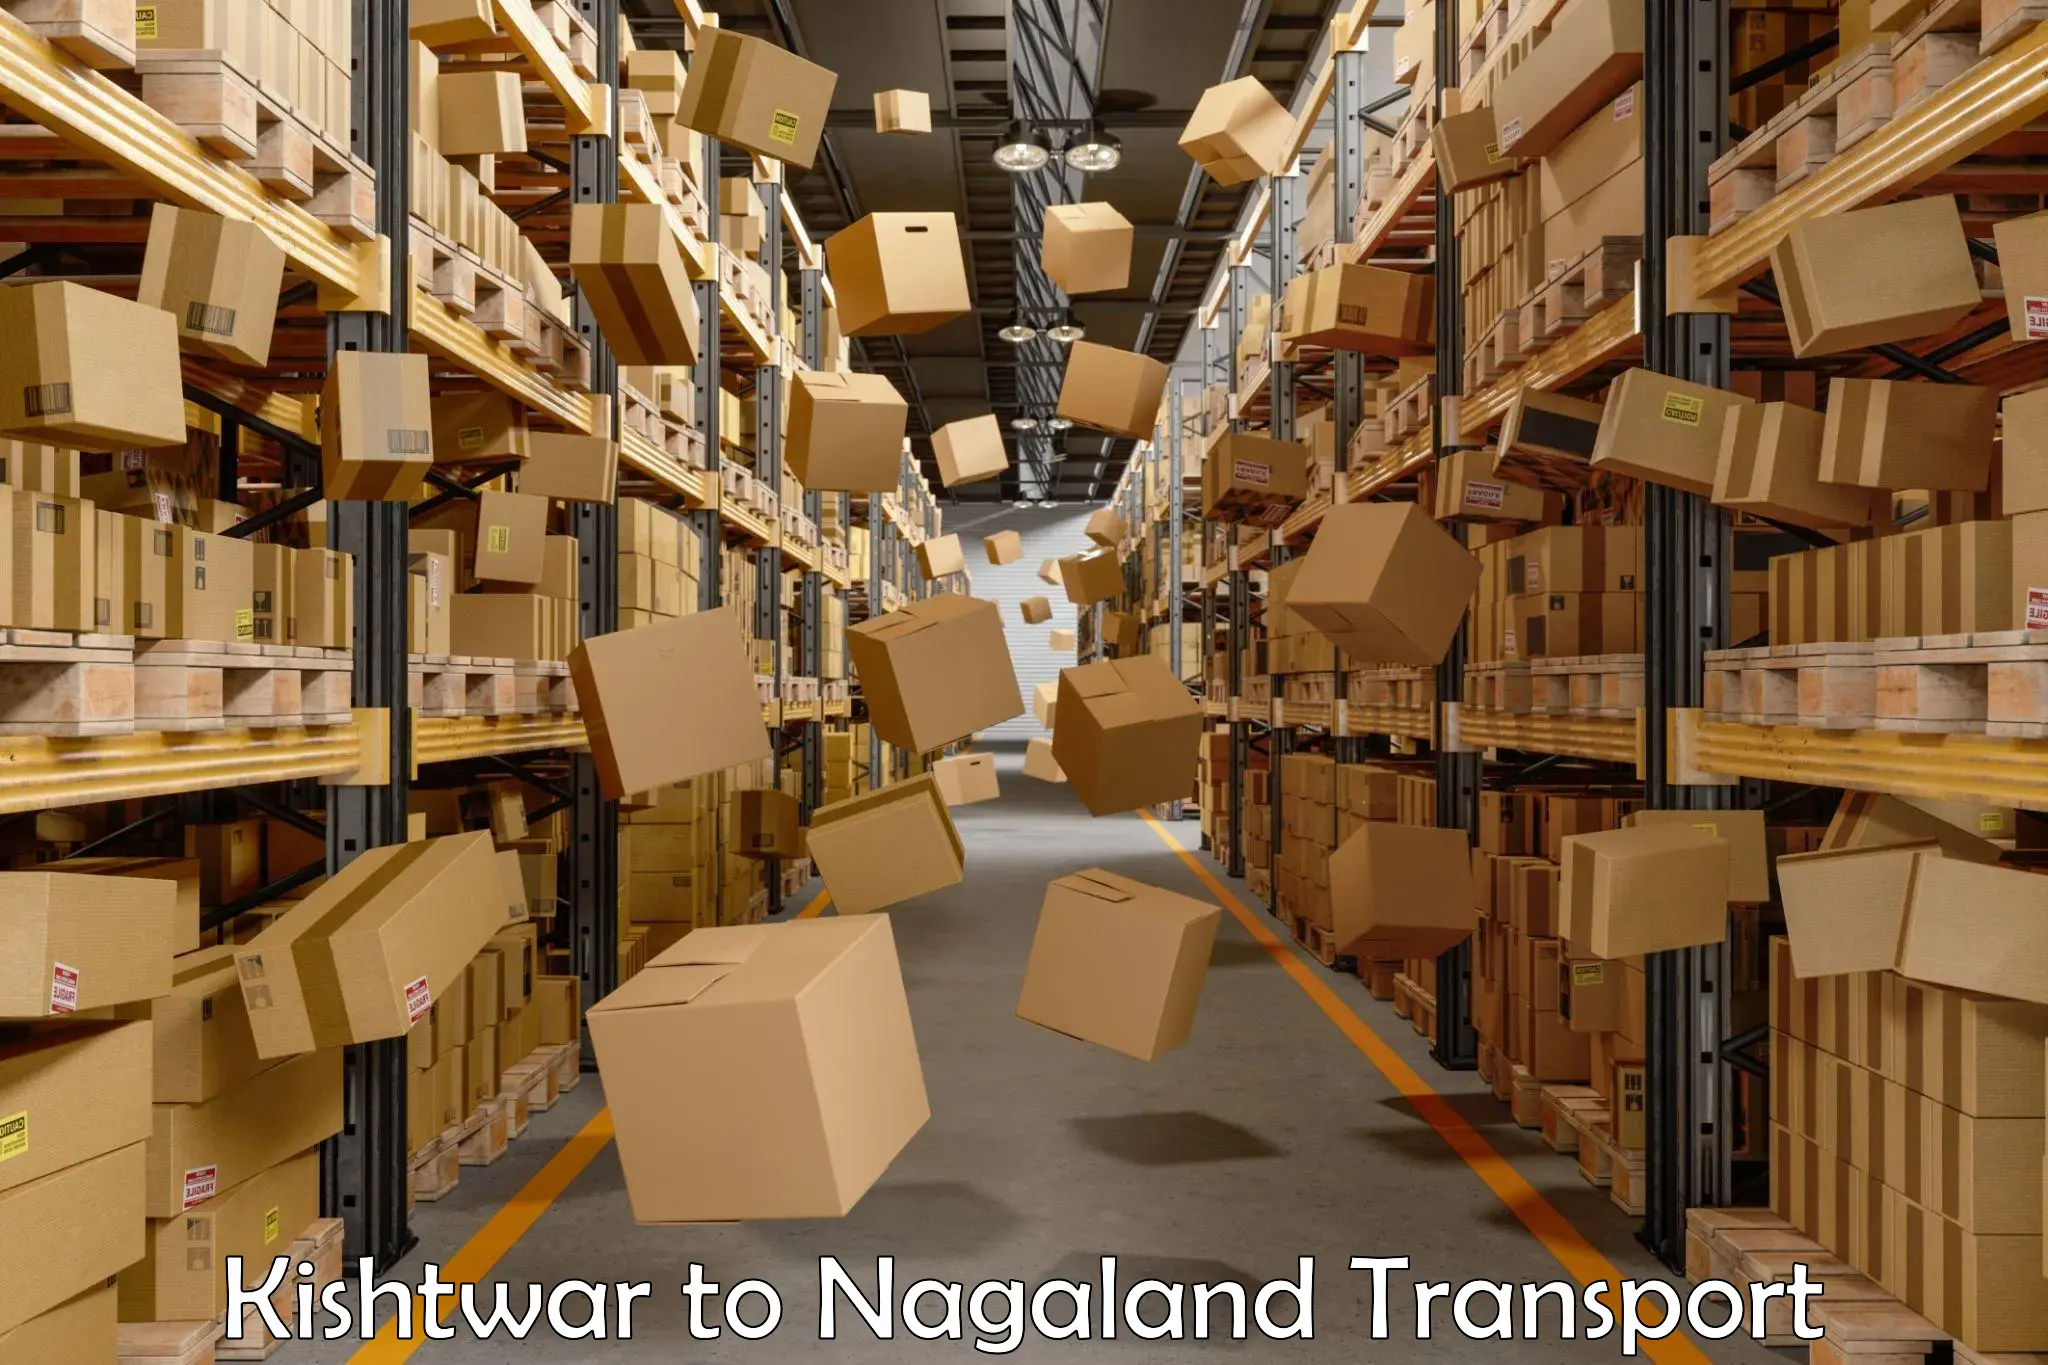 Nationwide transport services Kishtwar to Nagaland